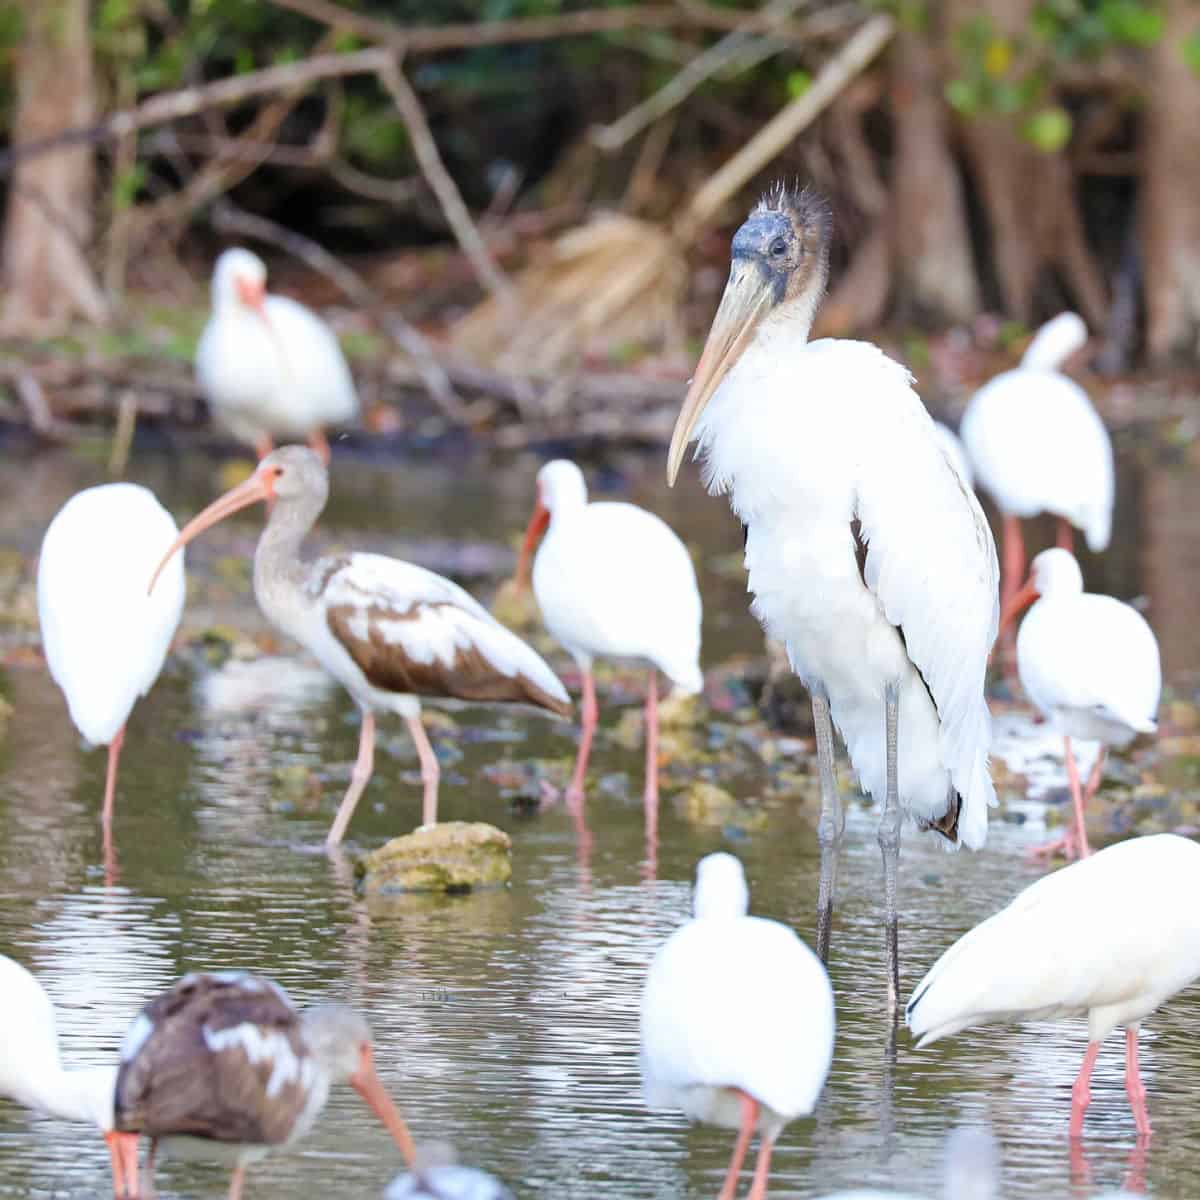 several birds at Big Cypress National Preserve in Florida including the endangered Wood Stork